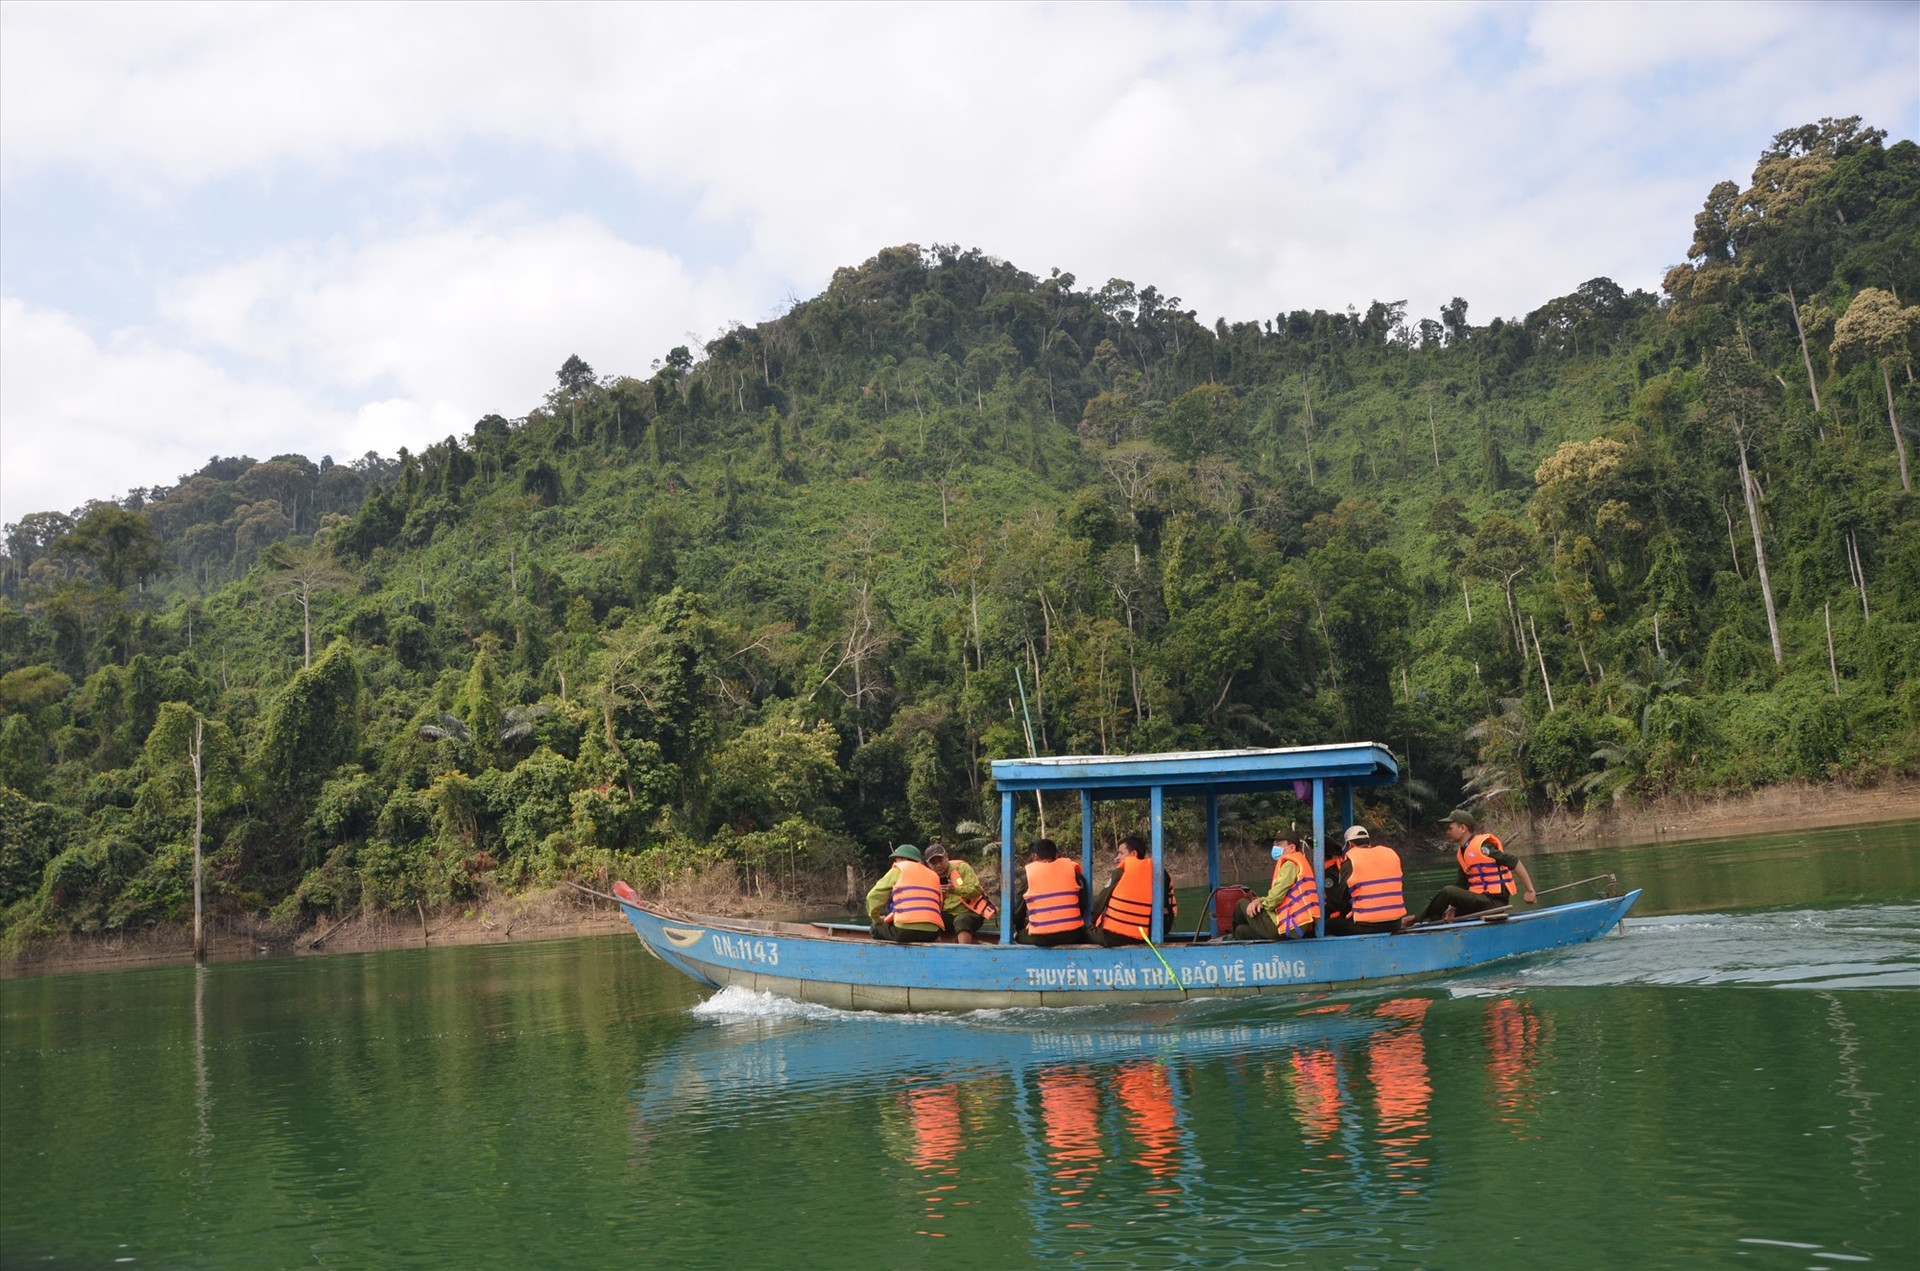 Tuần tra rừng trong lòng hồ thủy điện Đắc Mi (Phước Sơn) thuộc lâm phận Vườn quốc gia Sông Thanh